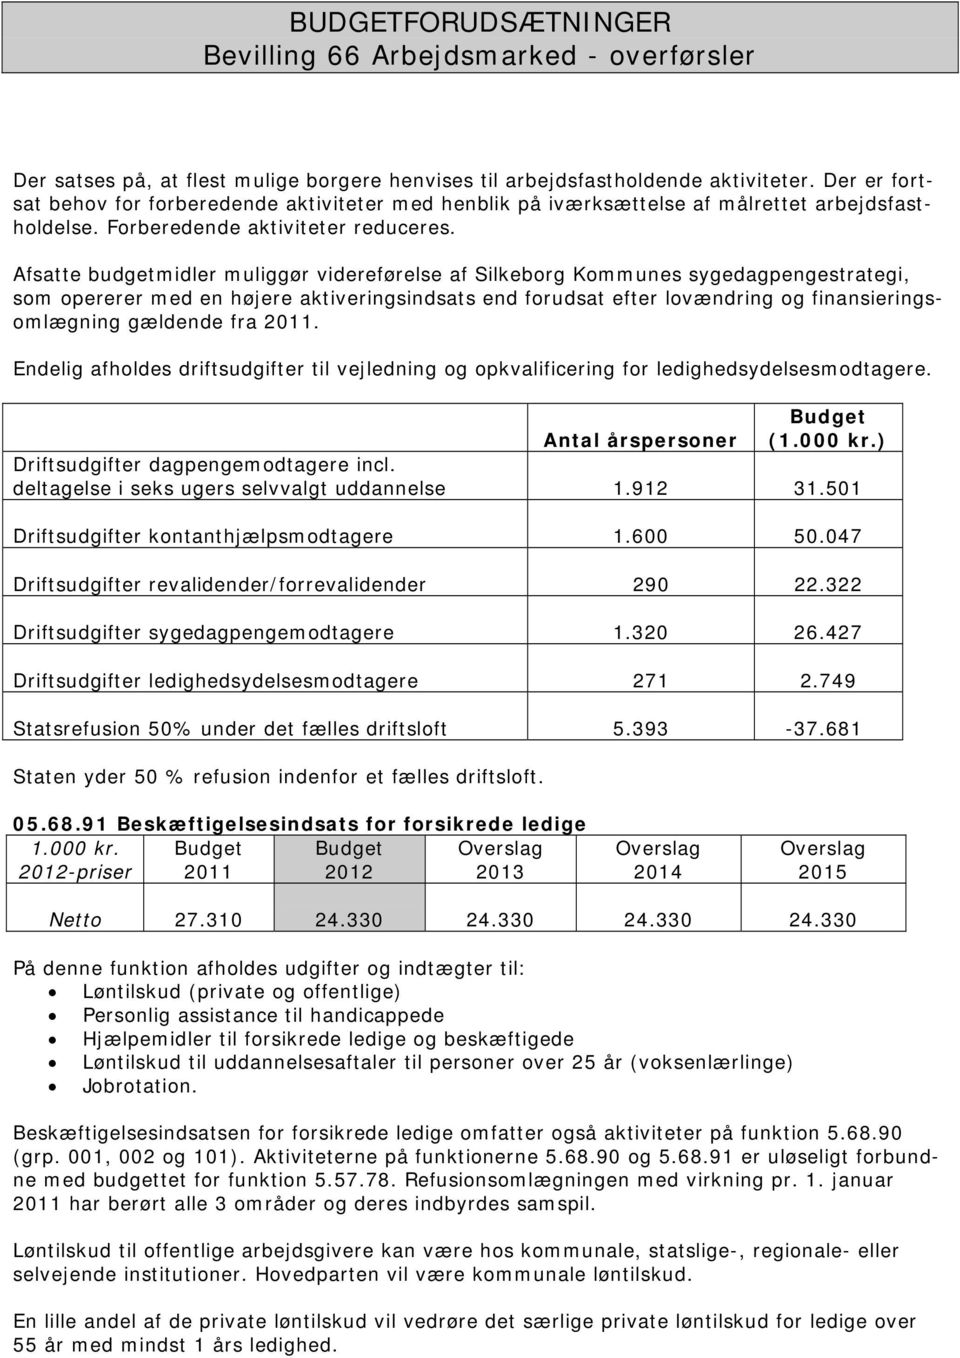 Afsatte budgetmidler muliggør videreførelse af Silkeborg Kommunes sygedagpengestrategi, som opererer med en højere aktiveringsindsats end forudsat efter lovændring og finansieringsomlægning gældende